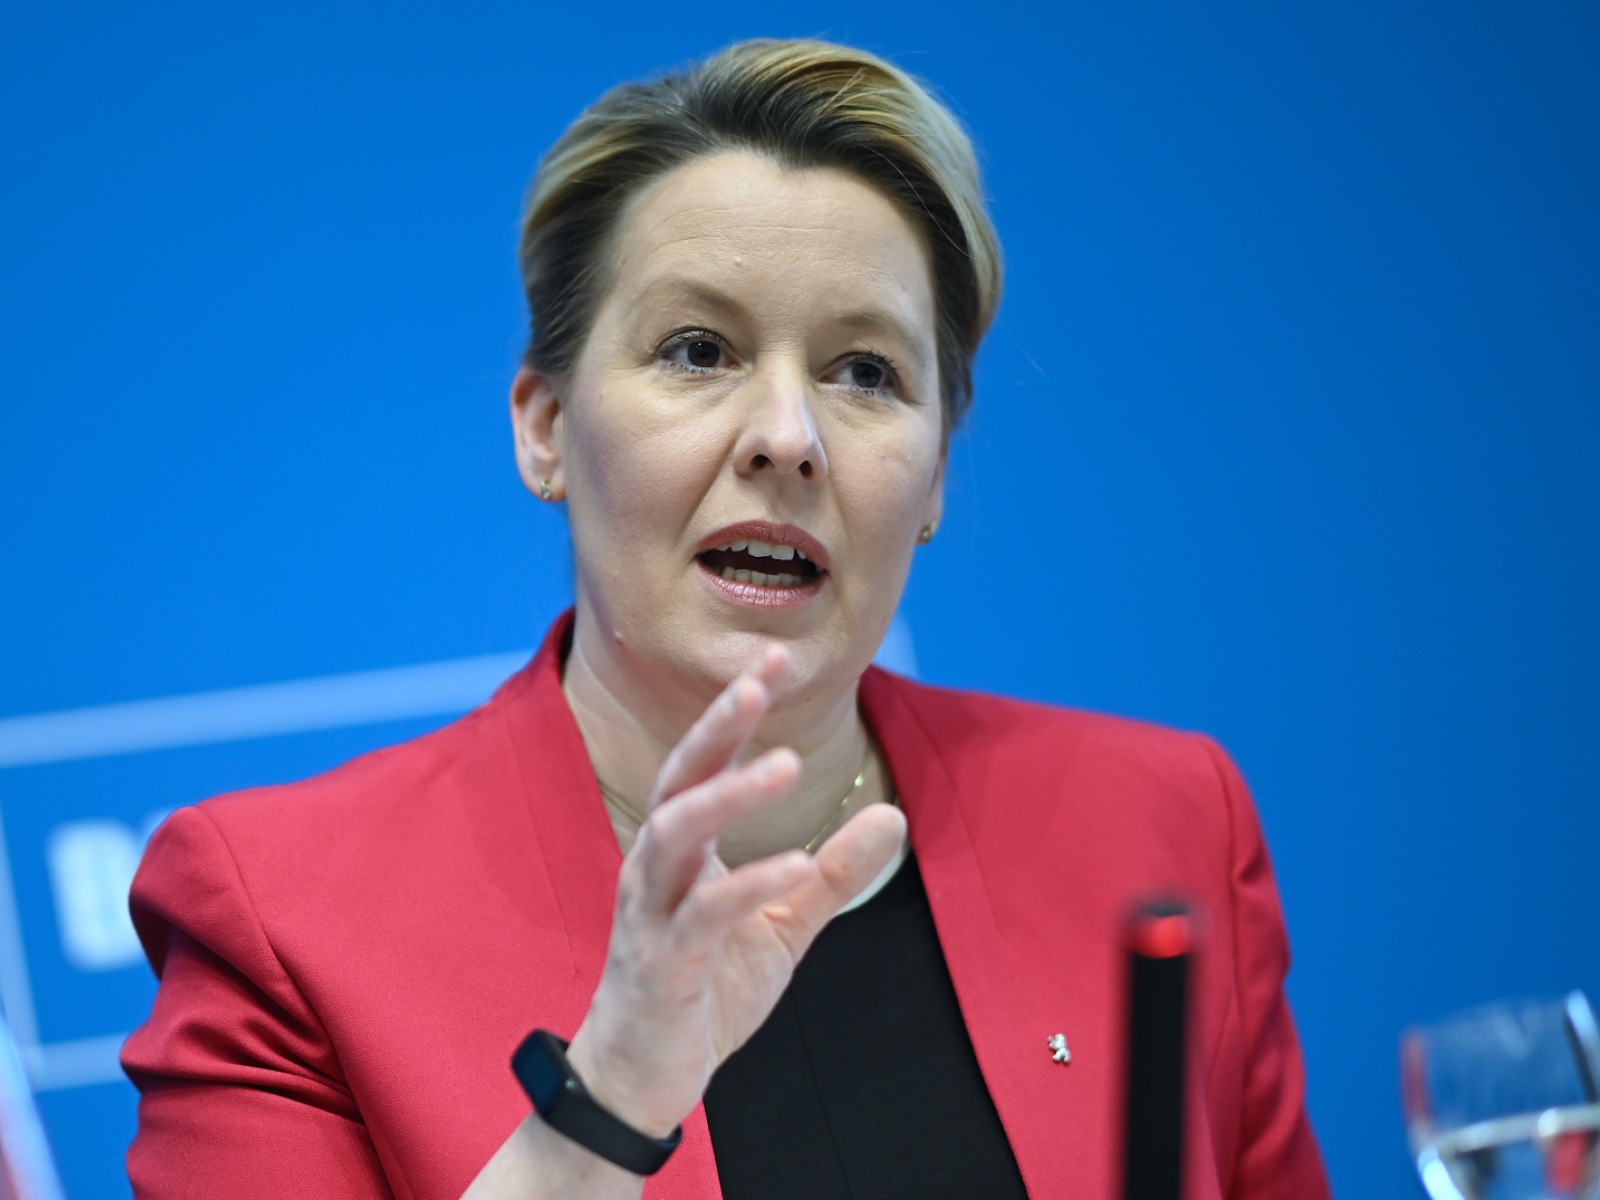 wieder attacken auf politikerinnen in deutschland